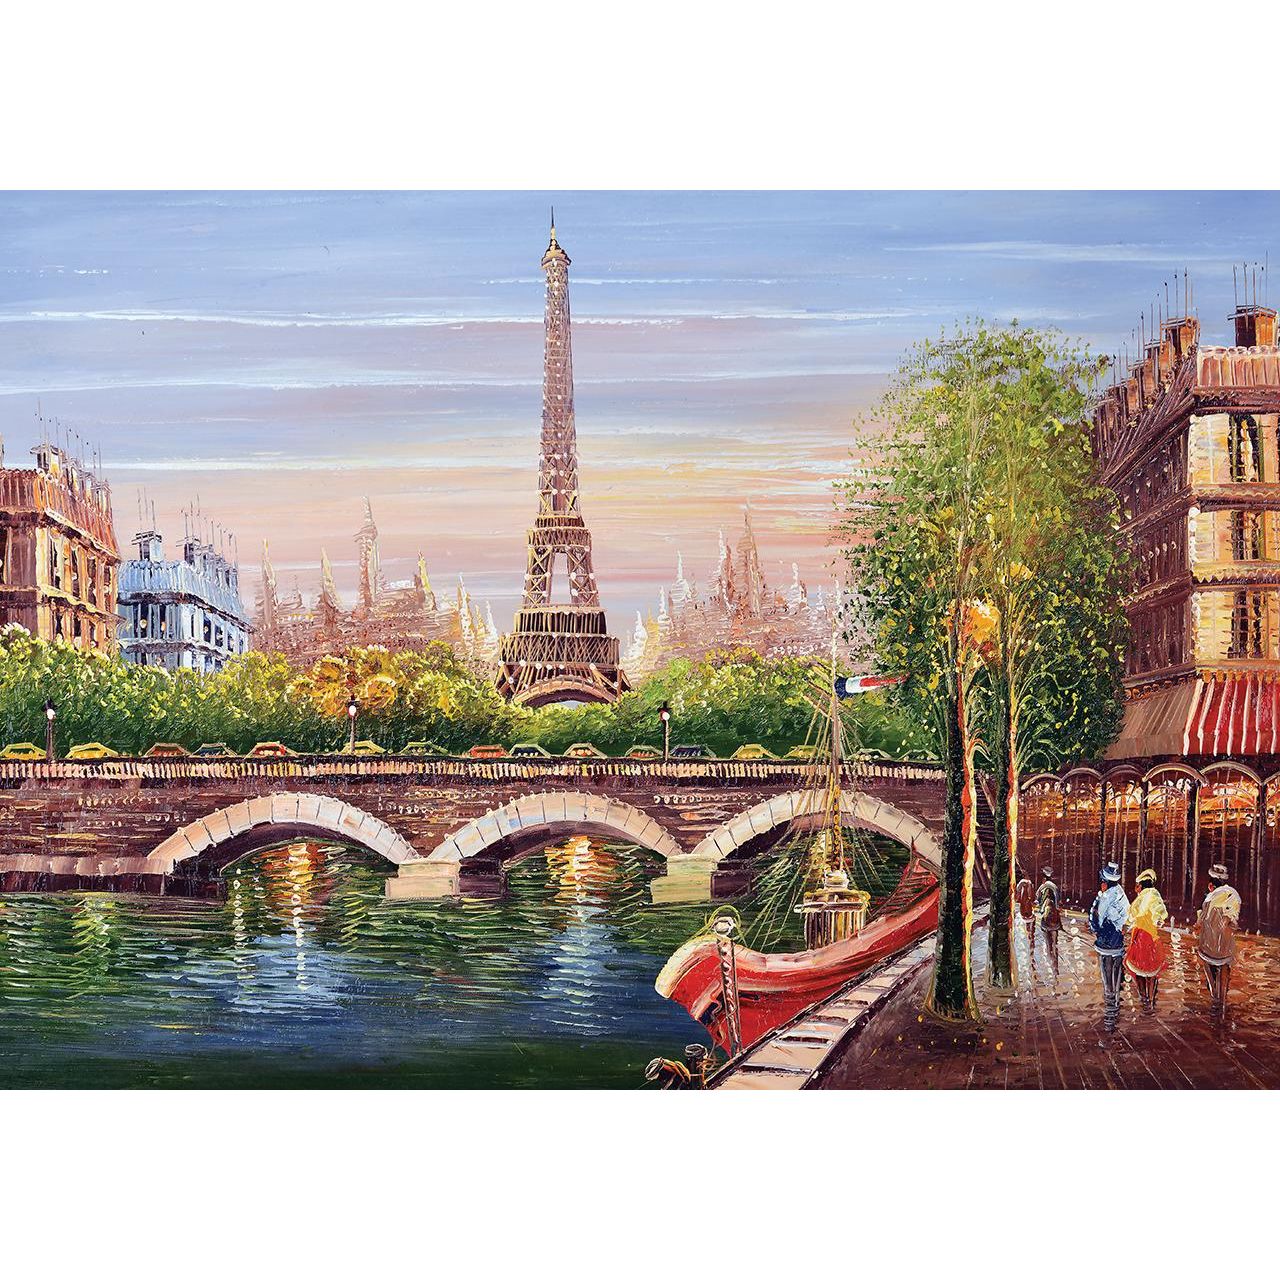 KS Games Seine River Paris Puzzle - 500 Pieces